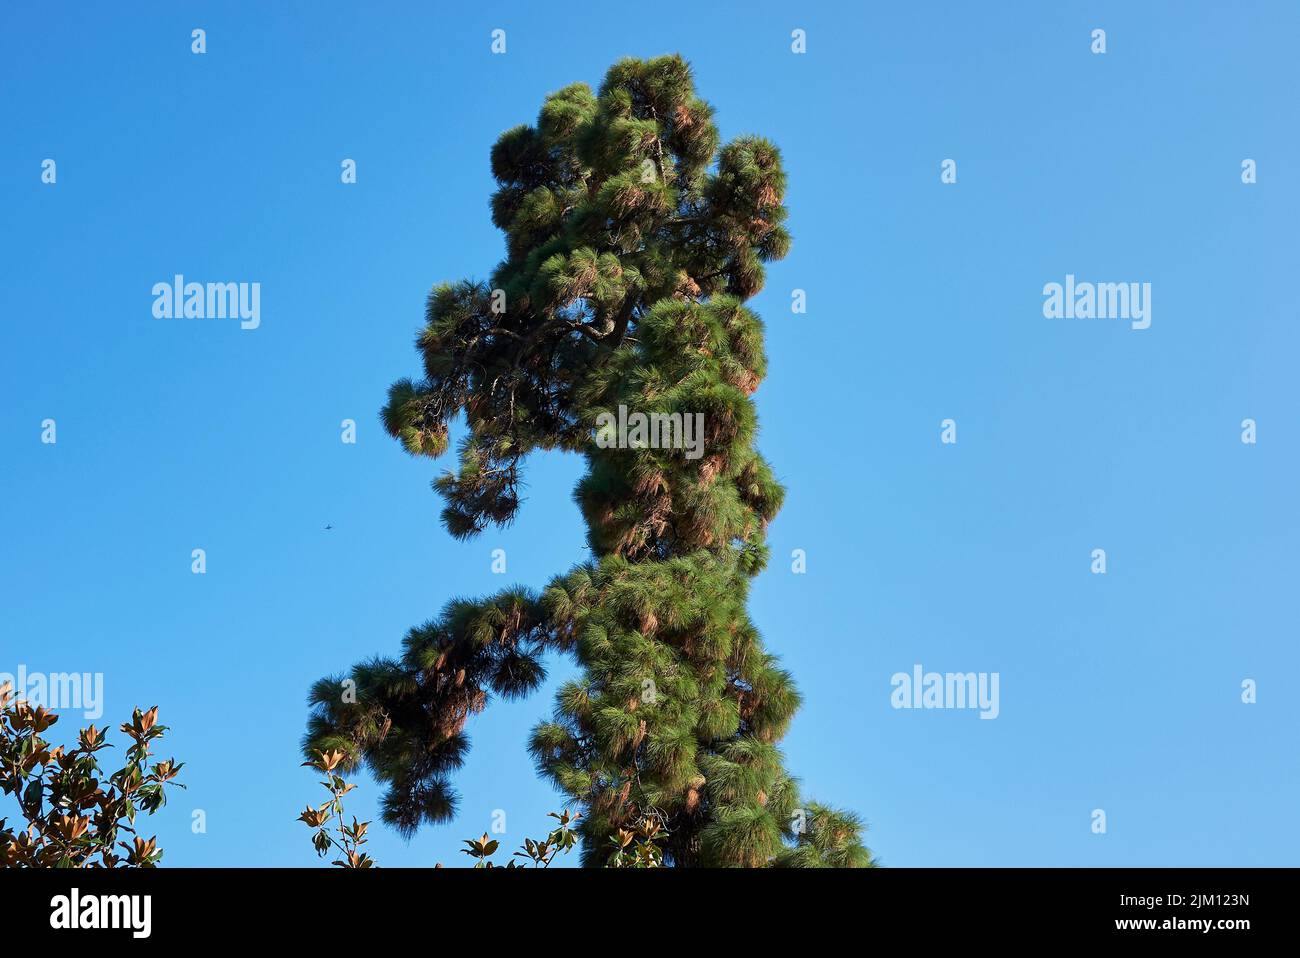 Pinus canariensis tree Stock Photo